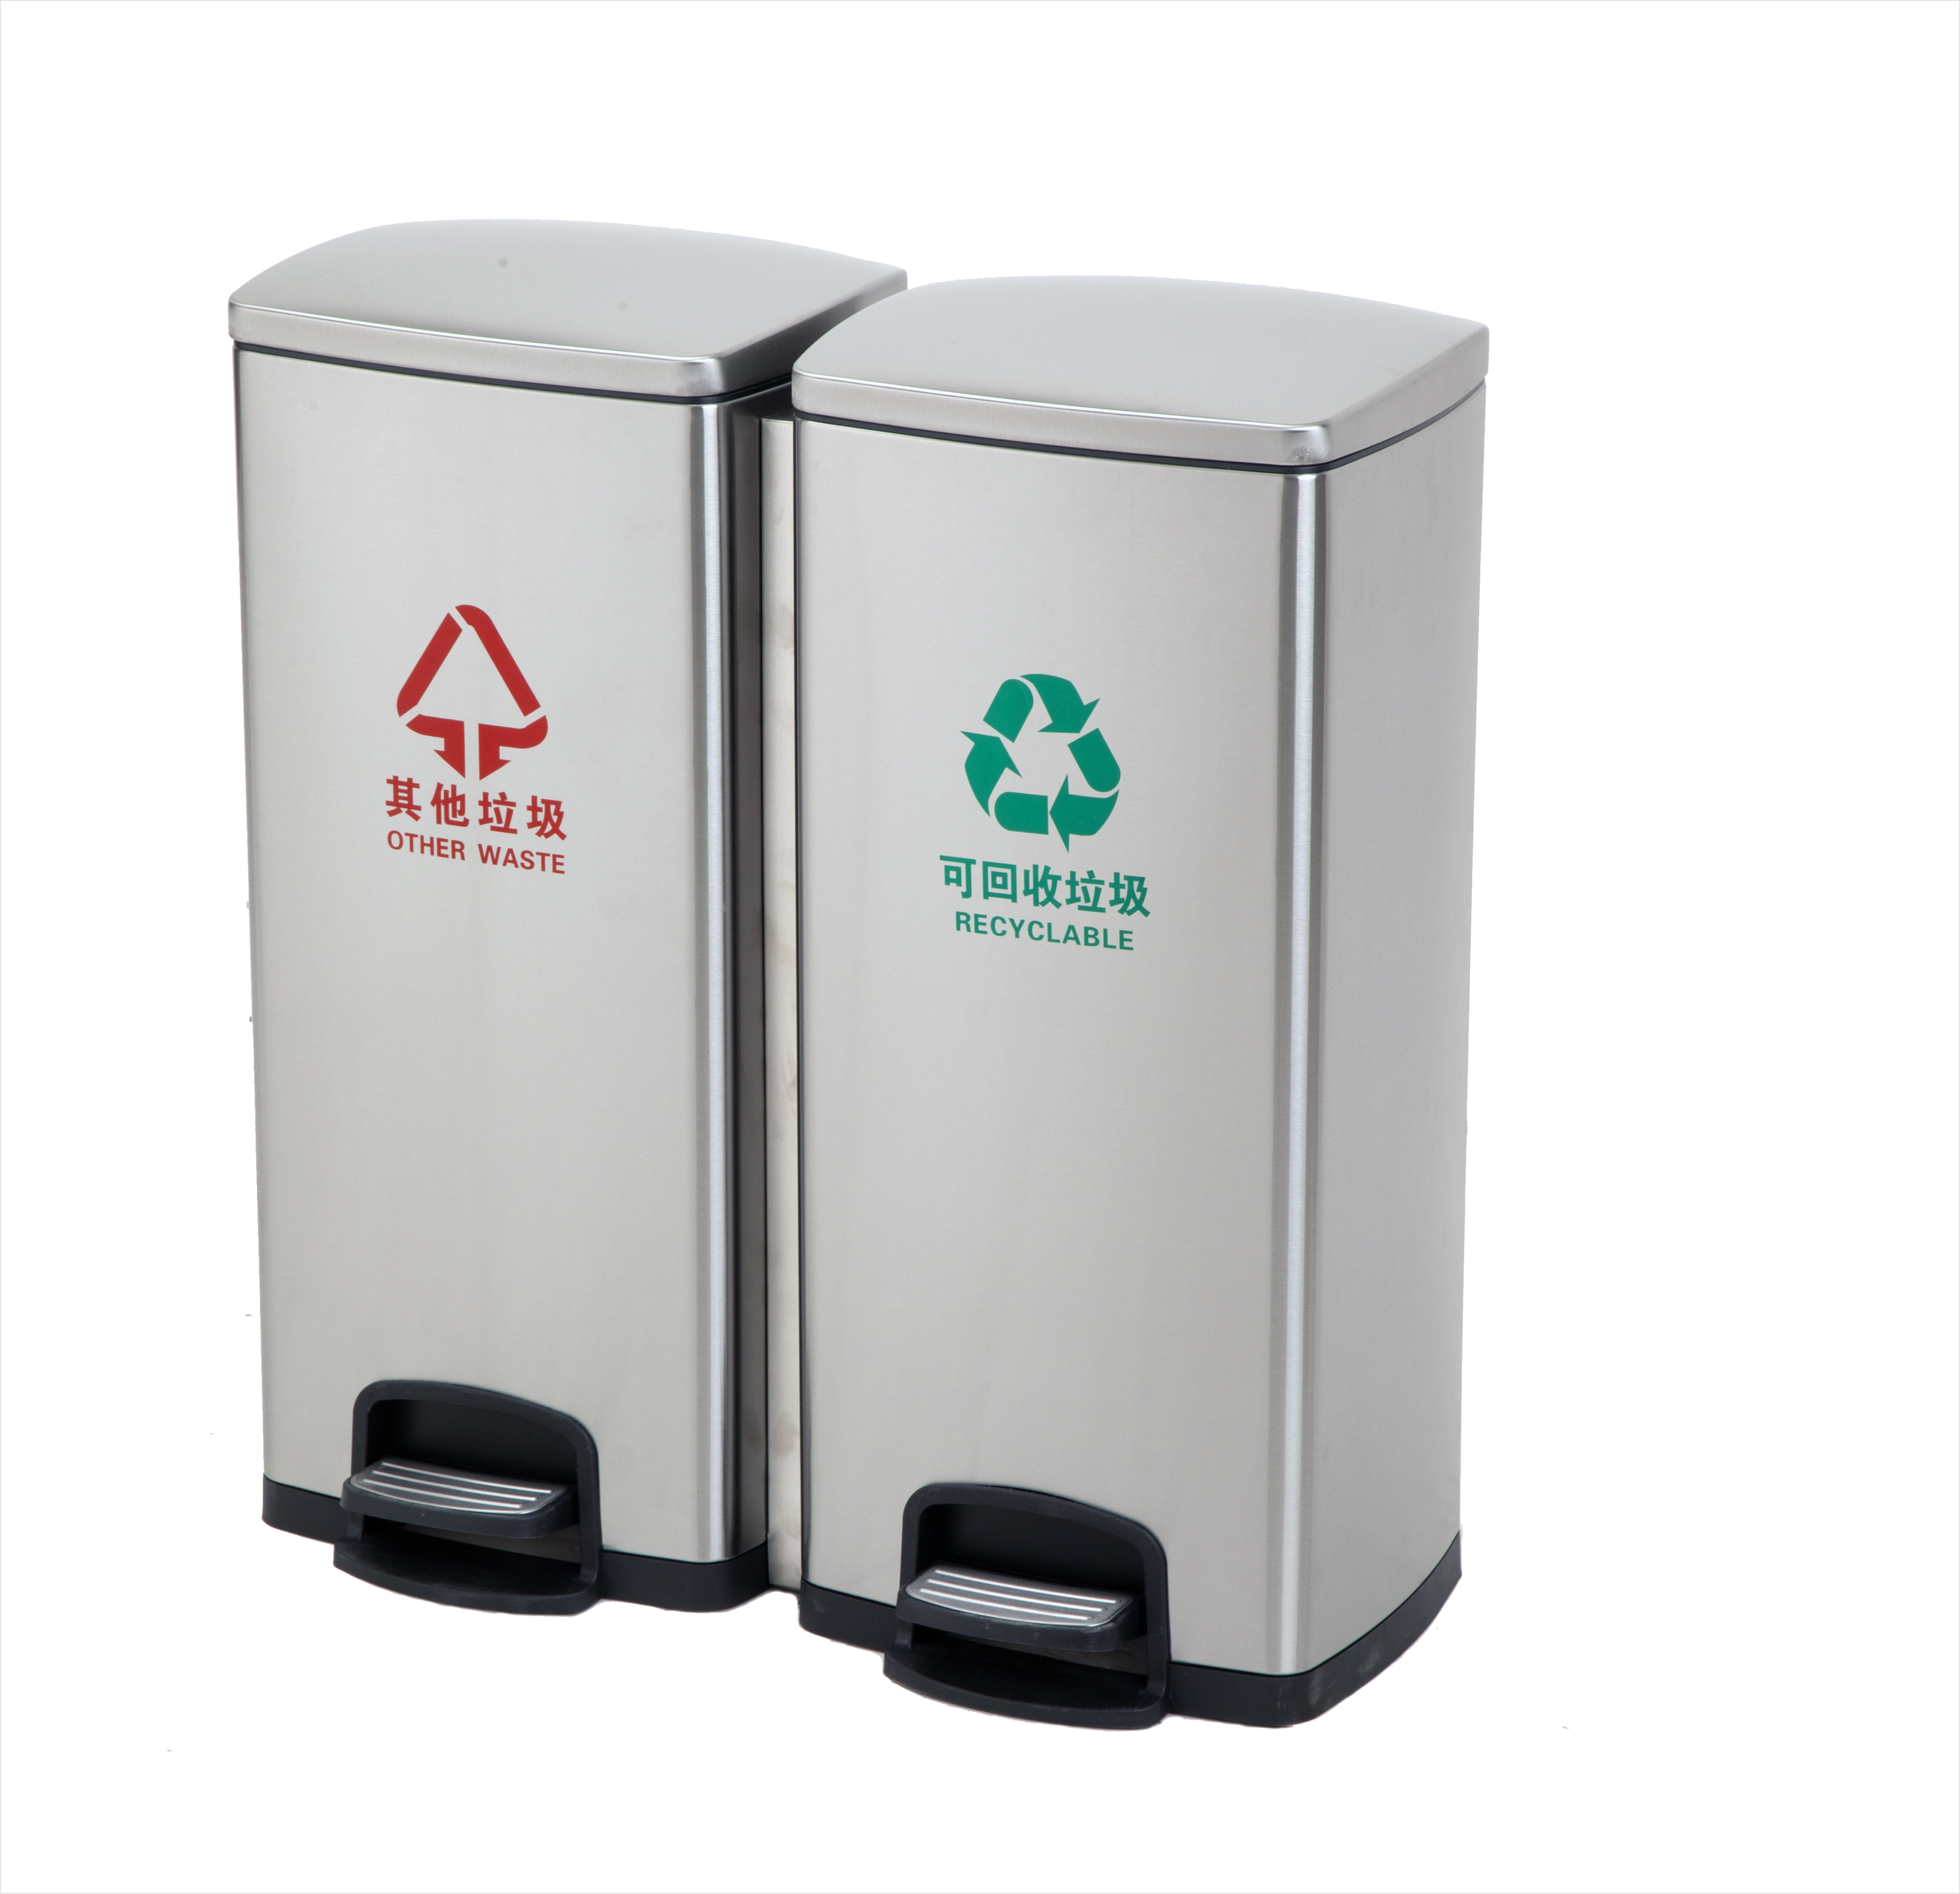 Caixote de lixo reciclável de aço inoxidável de compartimento duplo 30L + 30L para cozinha, escritório, casa - silencioso e suave abrir e fechar